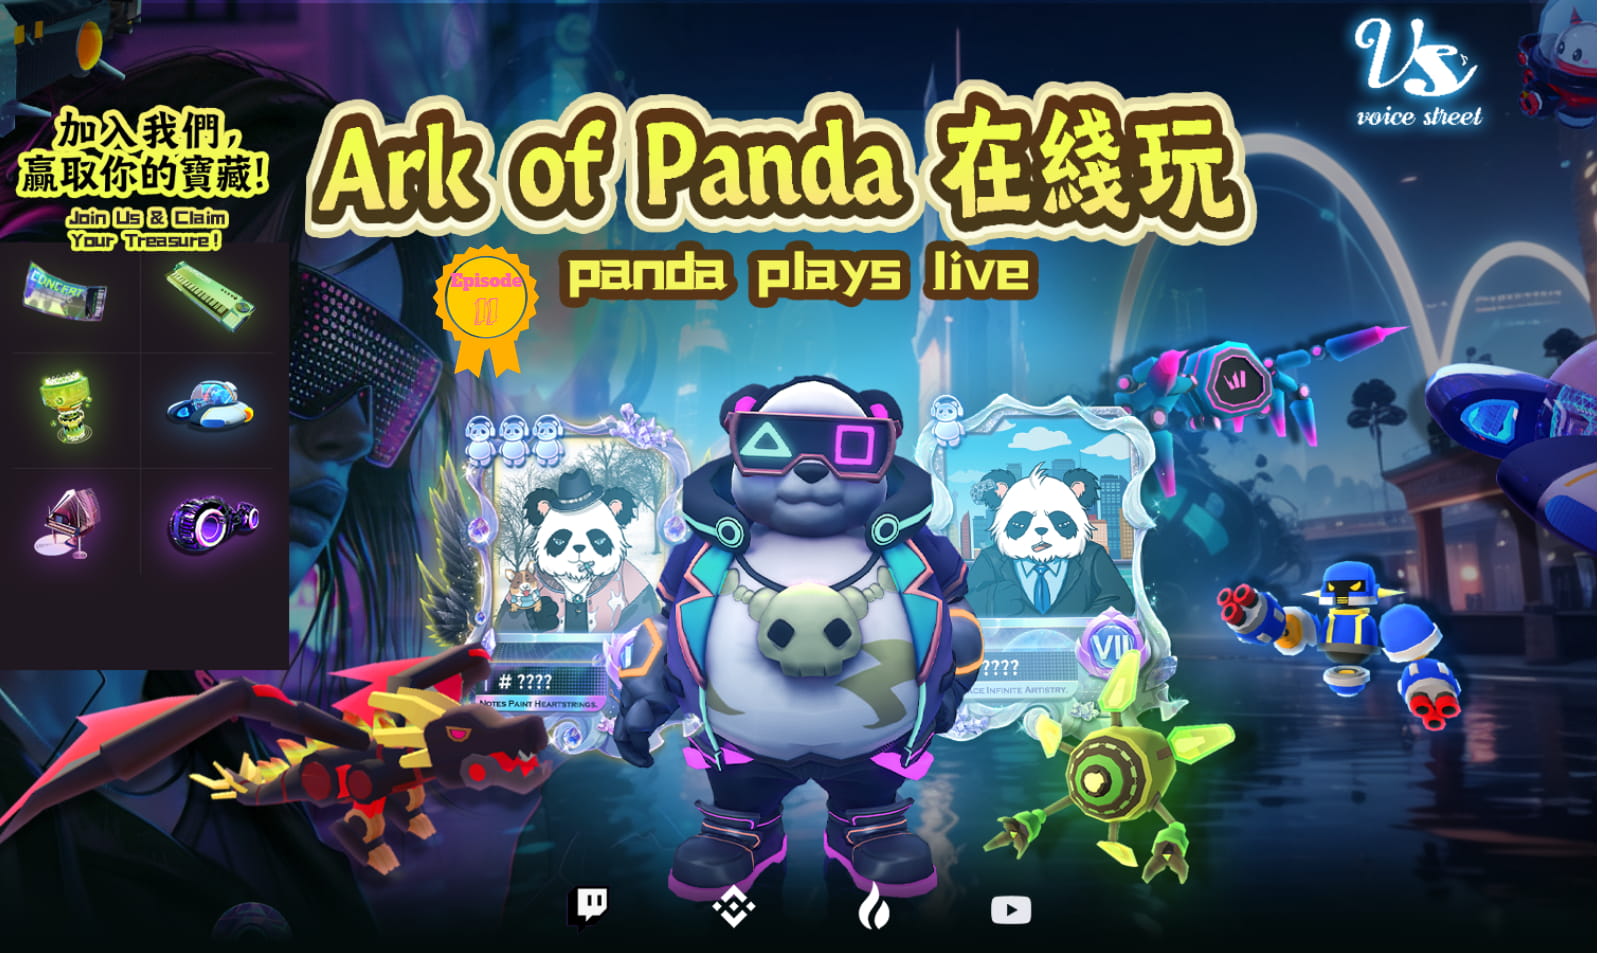 Ark of panda（DPGU） plays live EP17